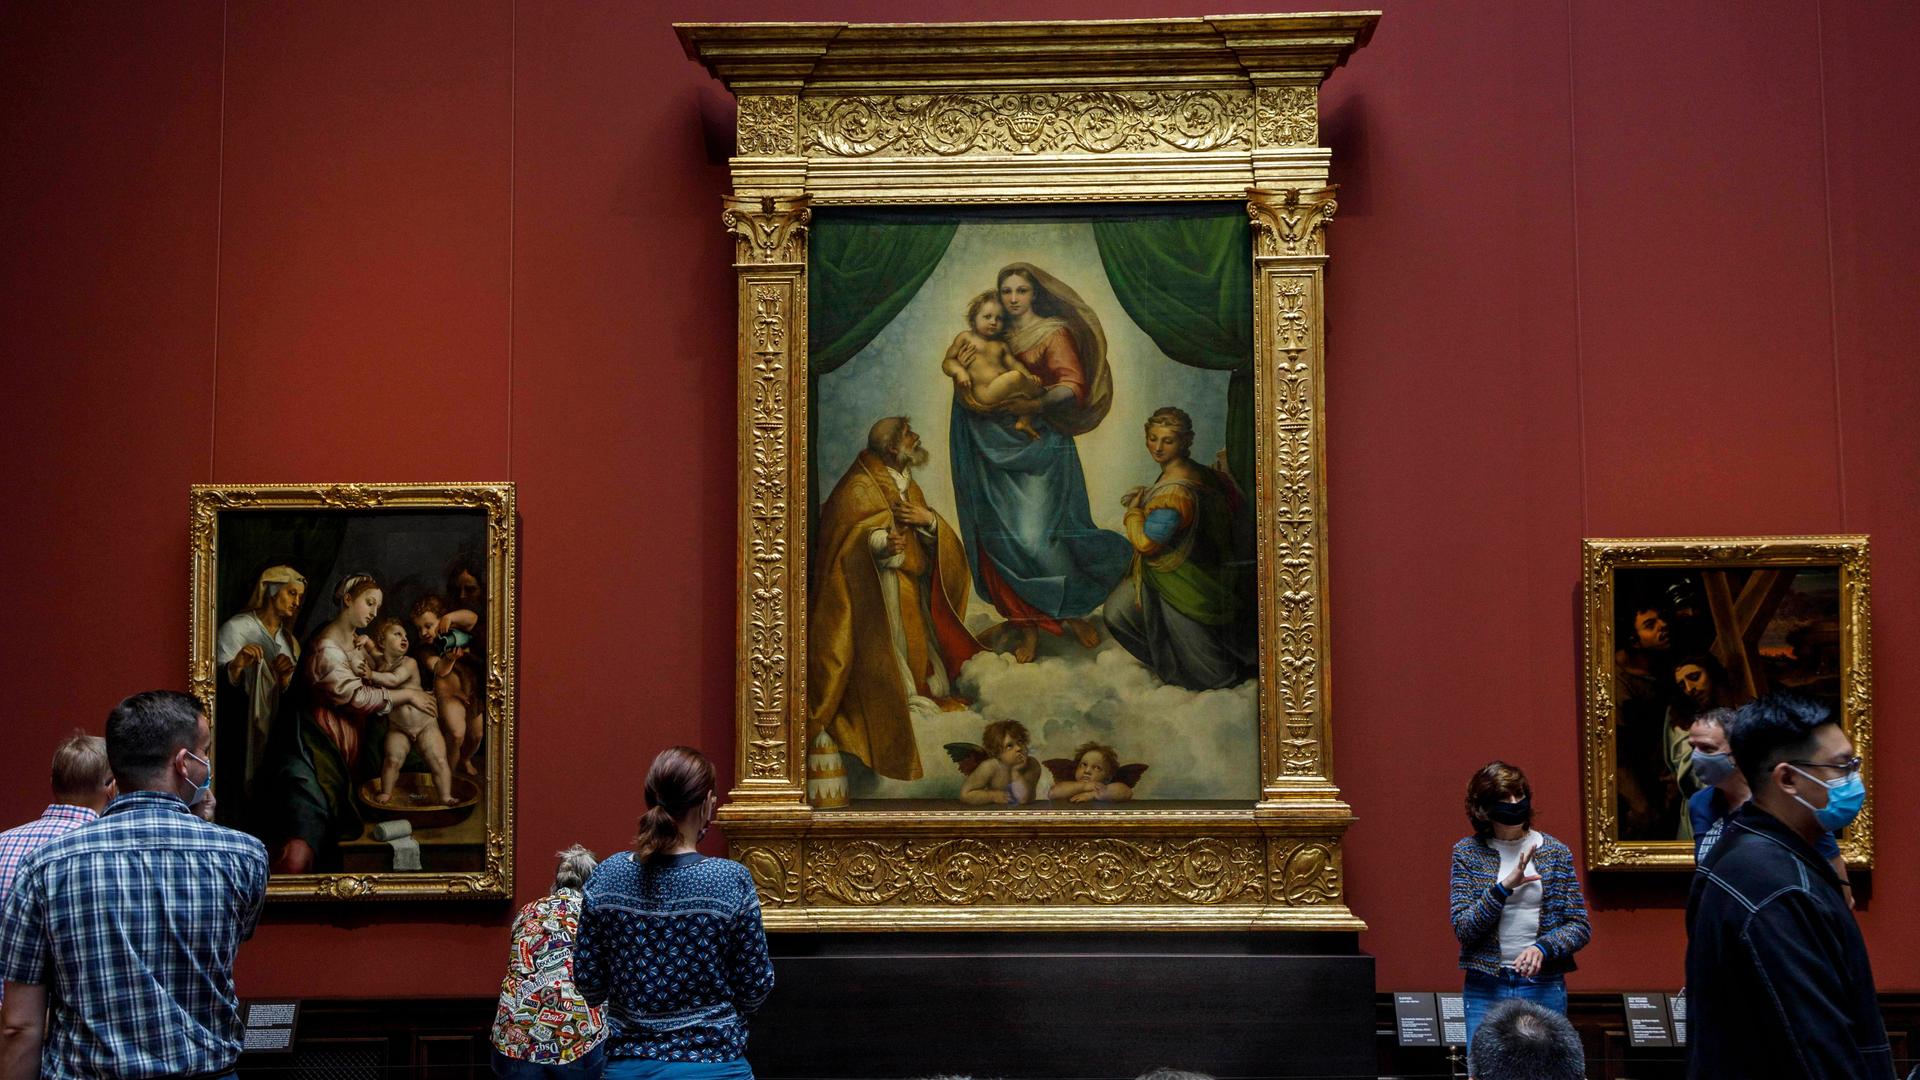 Besucher stehen in der Gemäldegalerie Alte Meister vor dem Gemälde "Sixtinische Madonna" von Raffael.